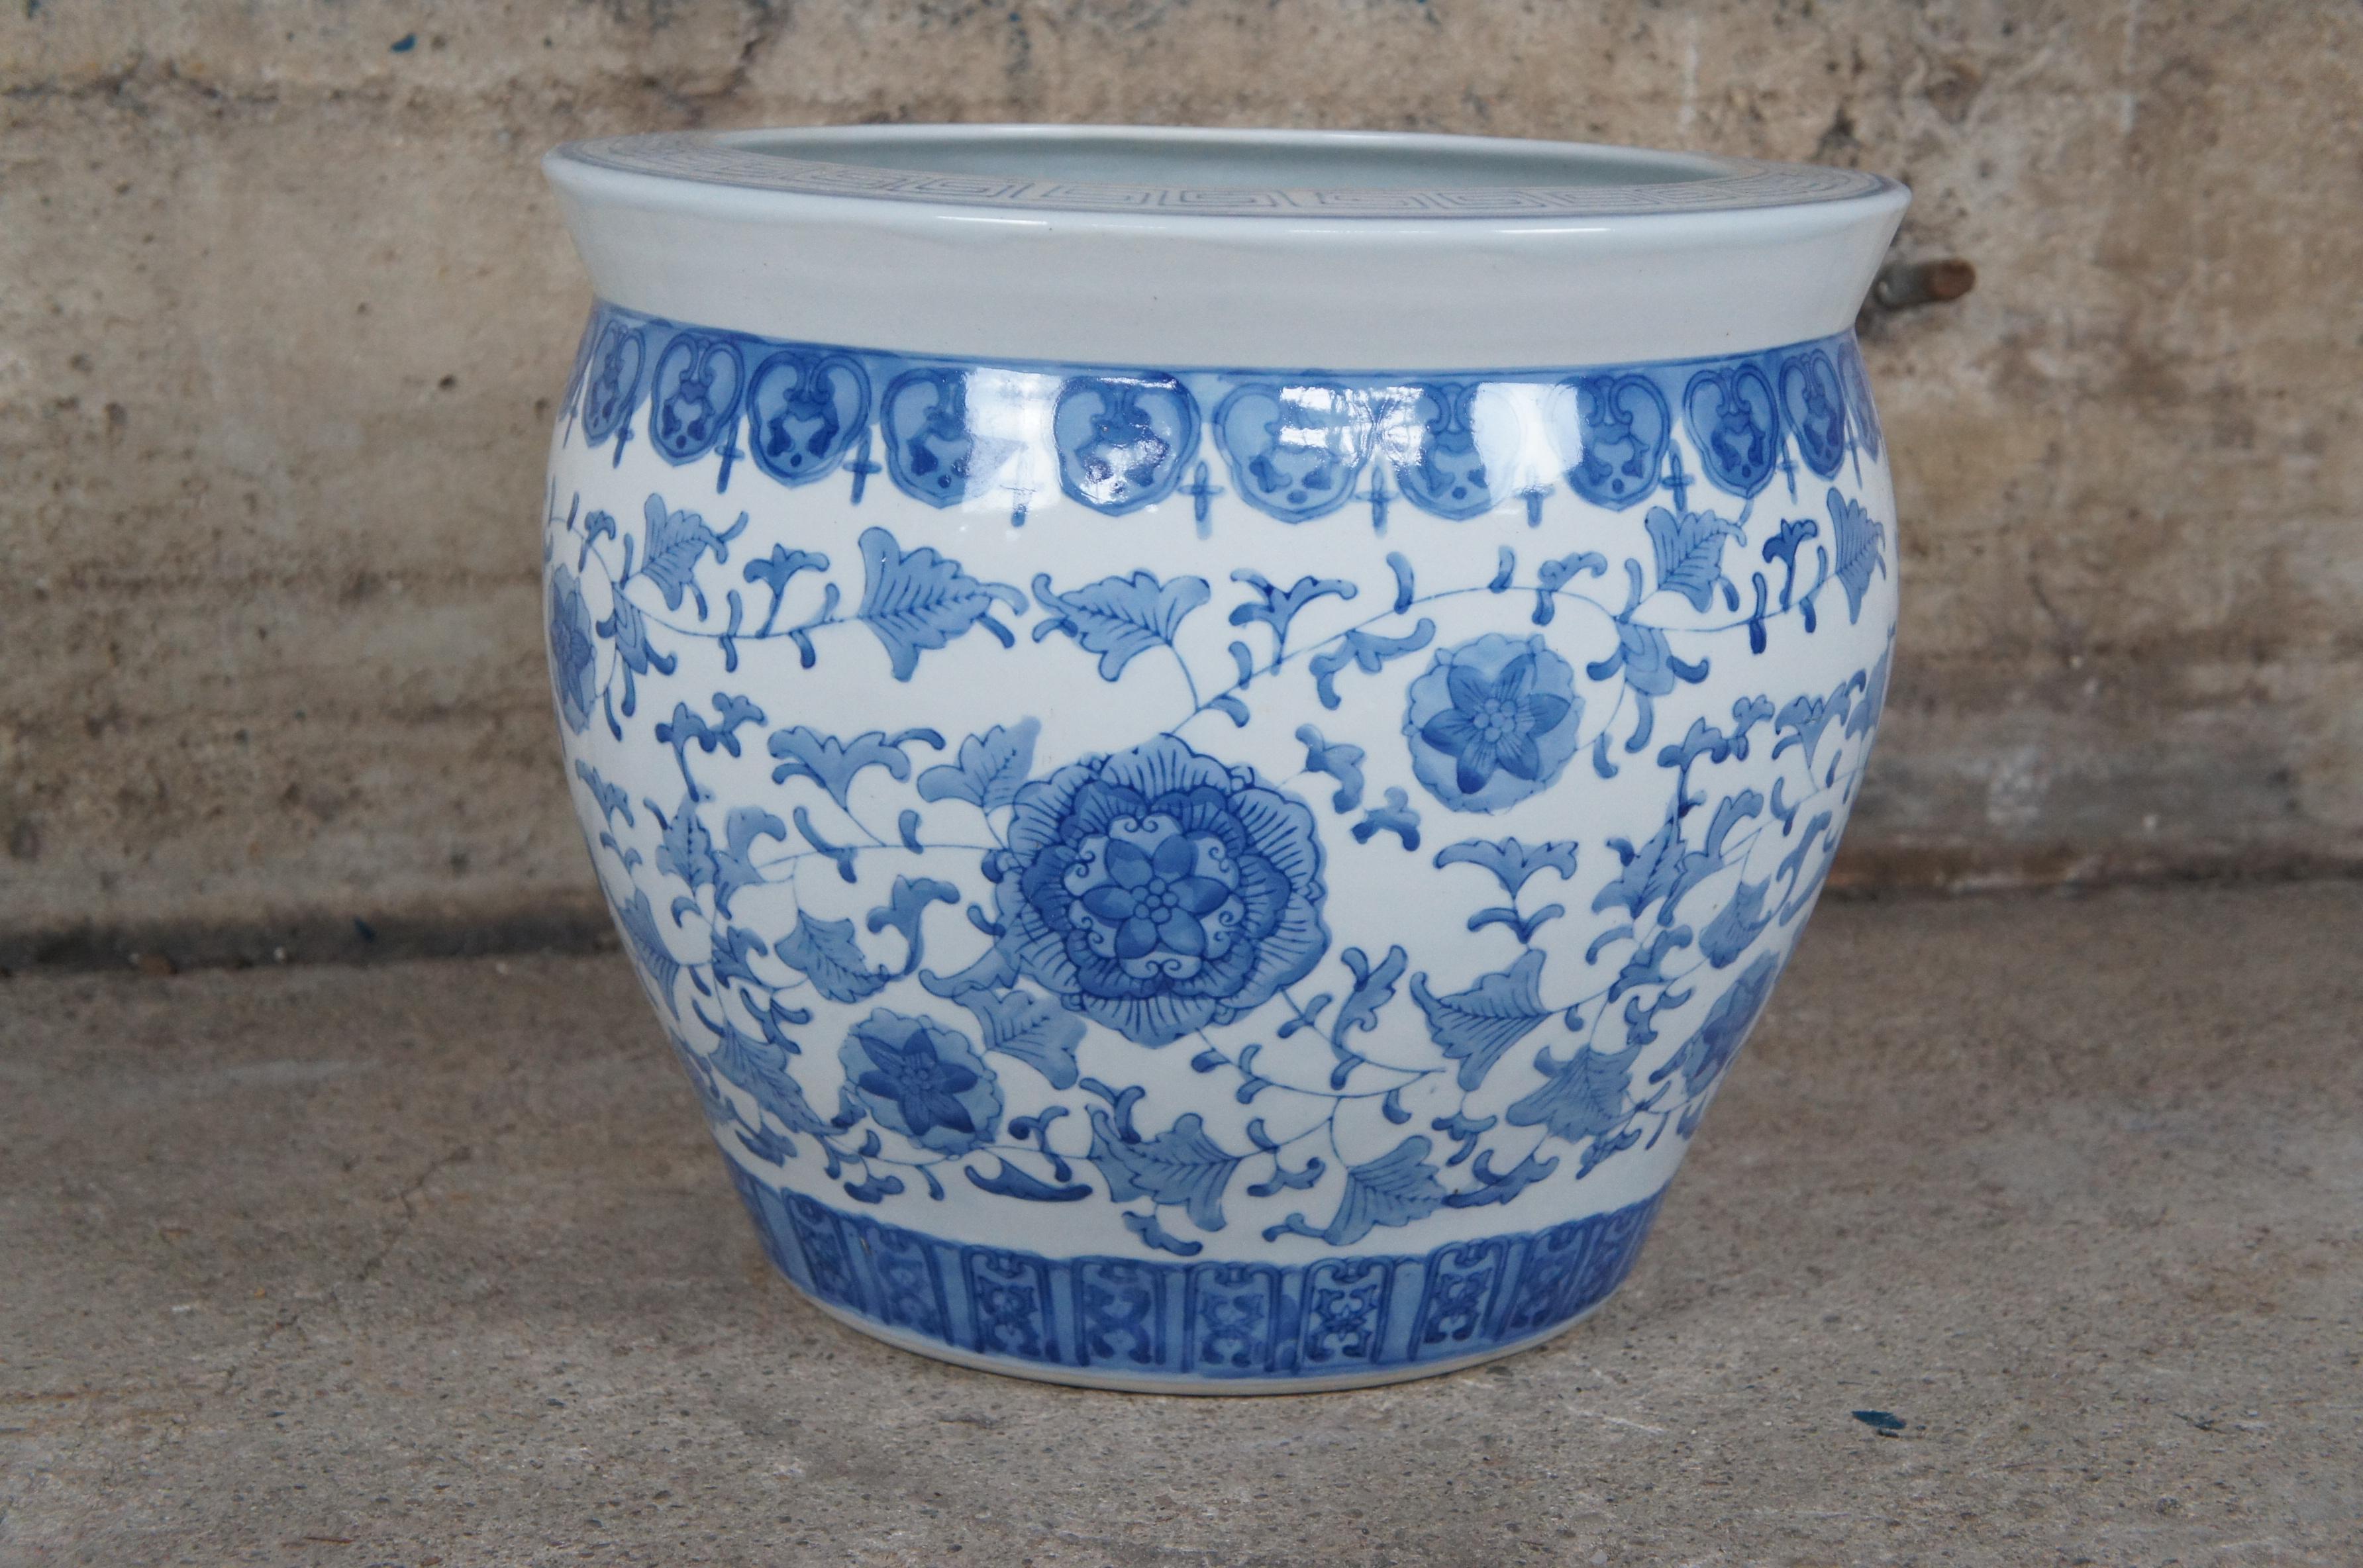 Porcelain Vintage Chinse Ceramic Blue & White Fish Bowl Planter Floral Chinoiserie Pot